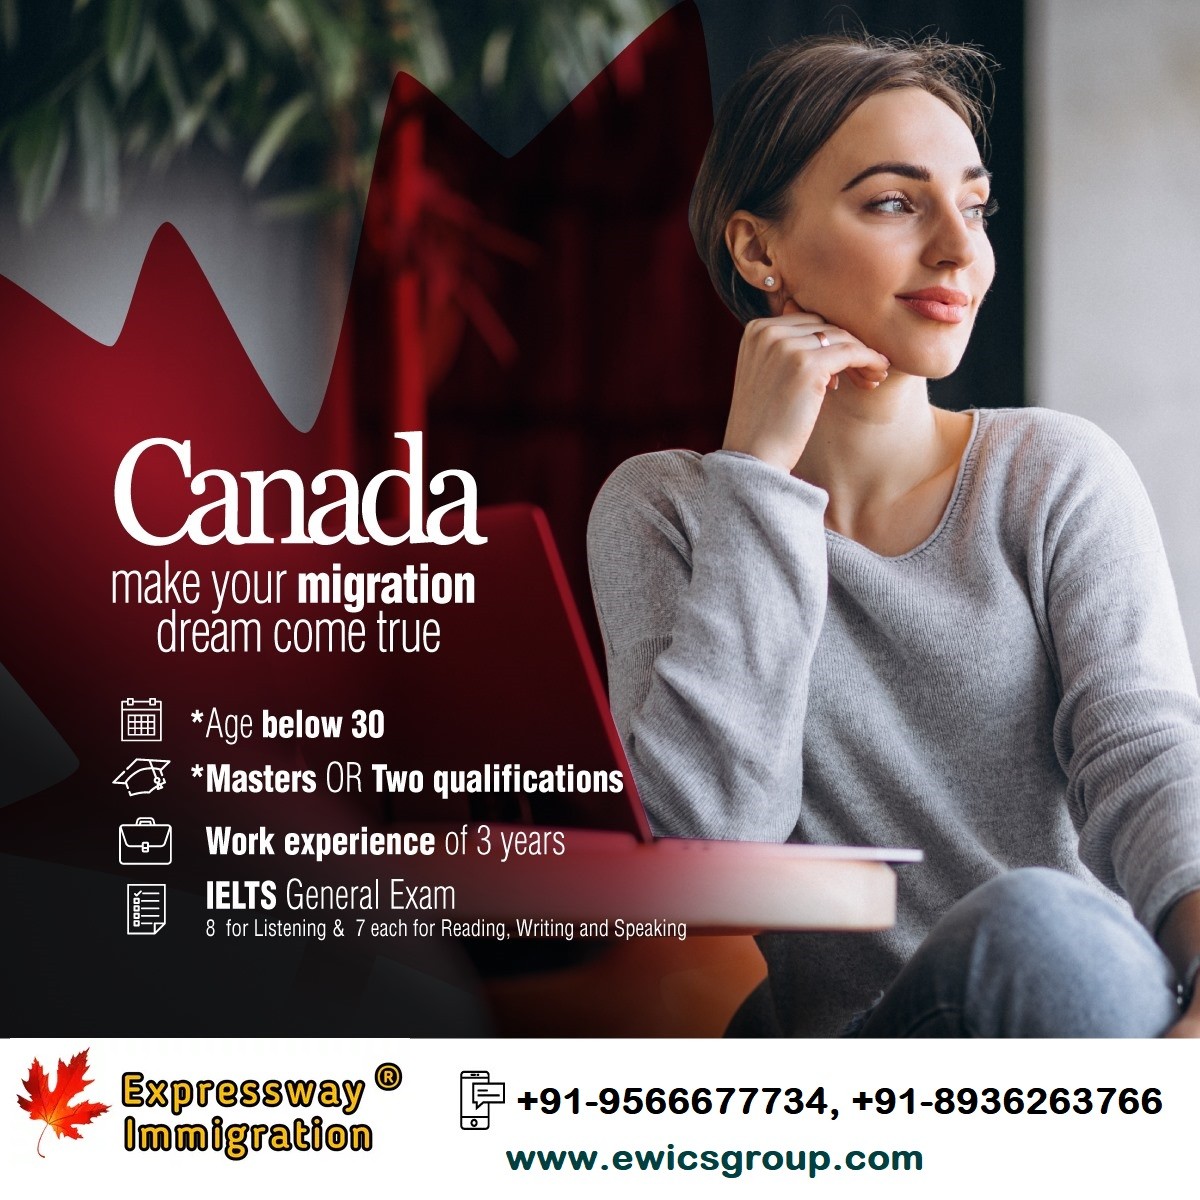 Canada PR Visa Consultants